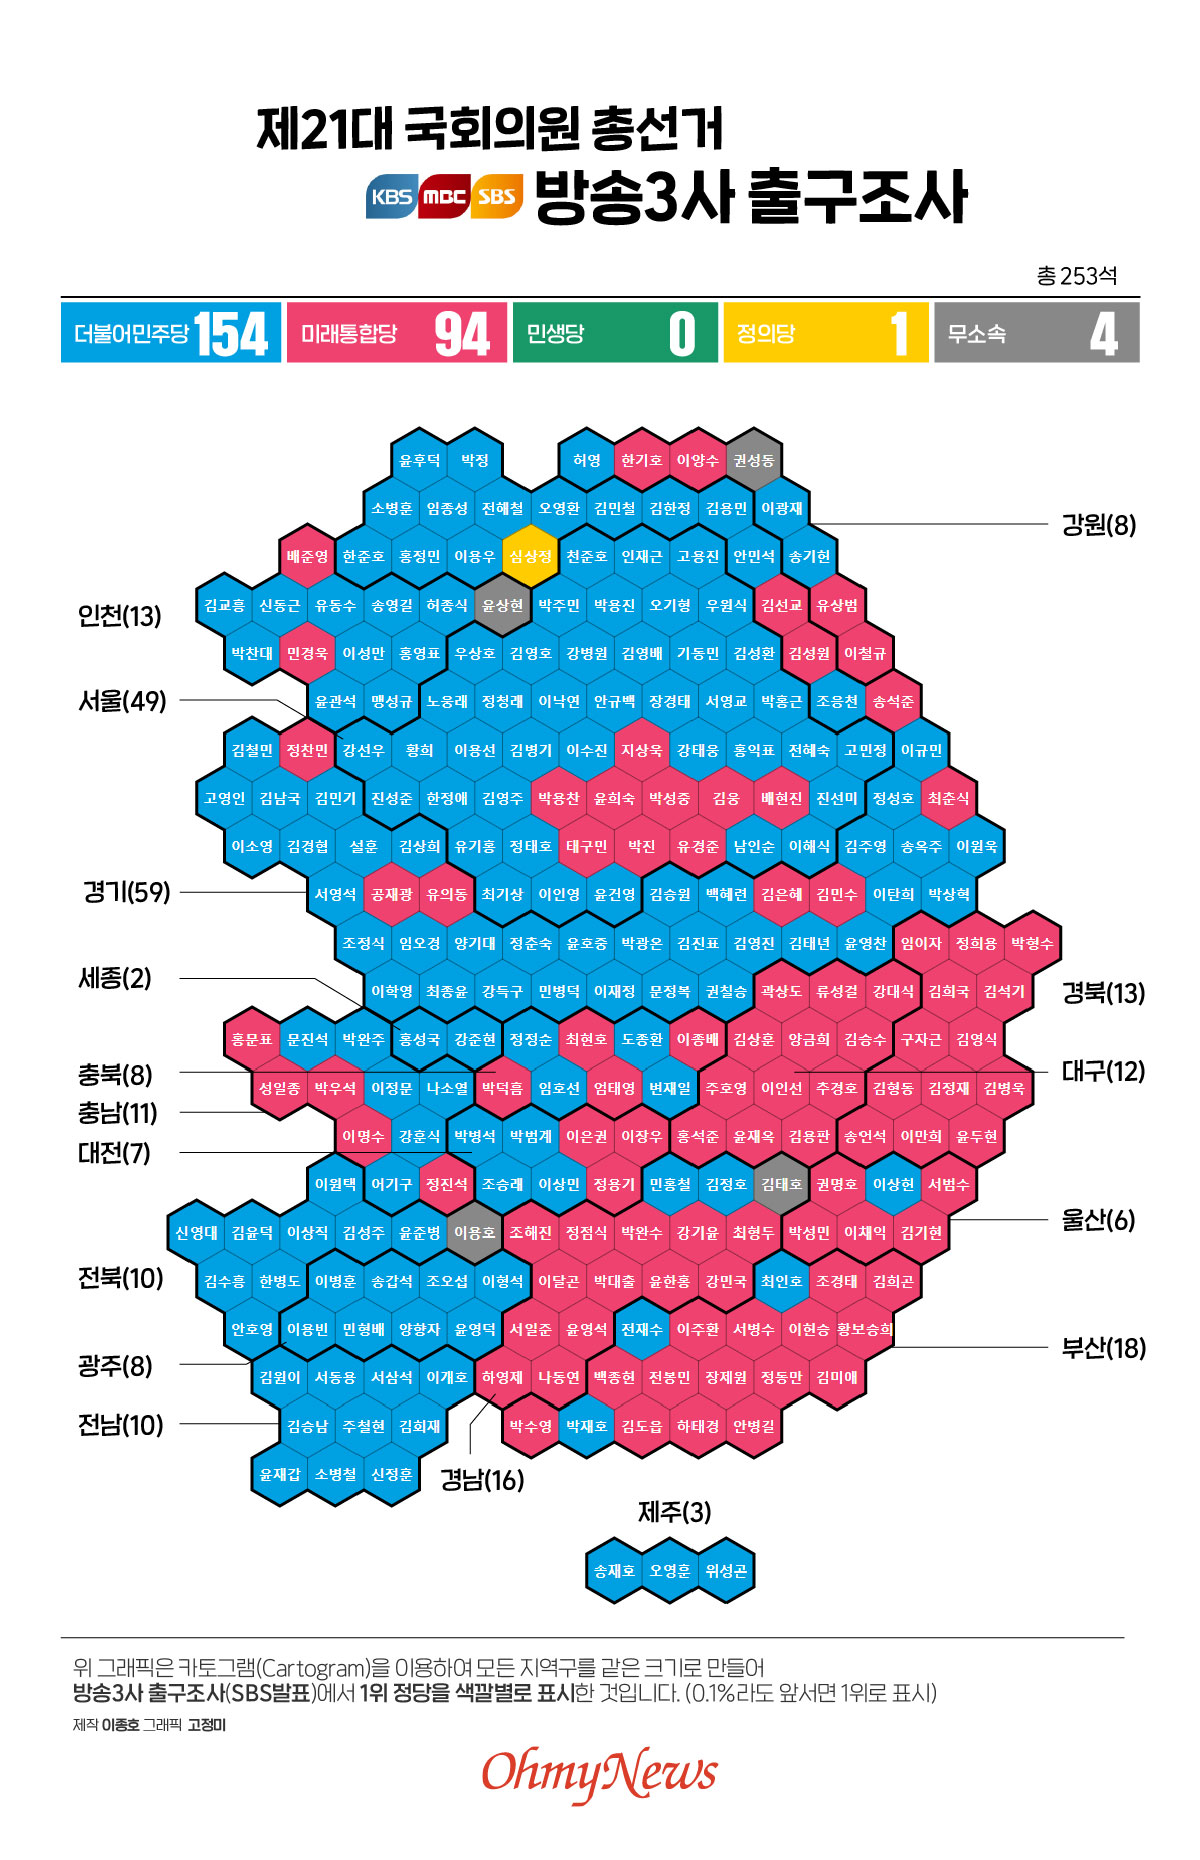  제 21대 국회의원 총선거 SBS·KBS ·MBC 방송사 출구조사(SBS발표)